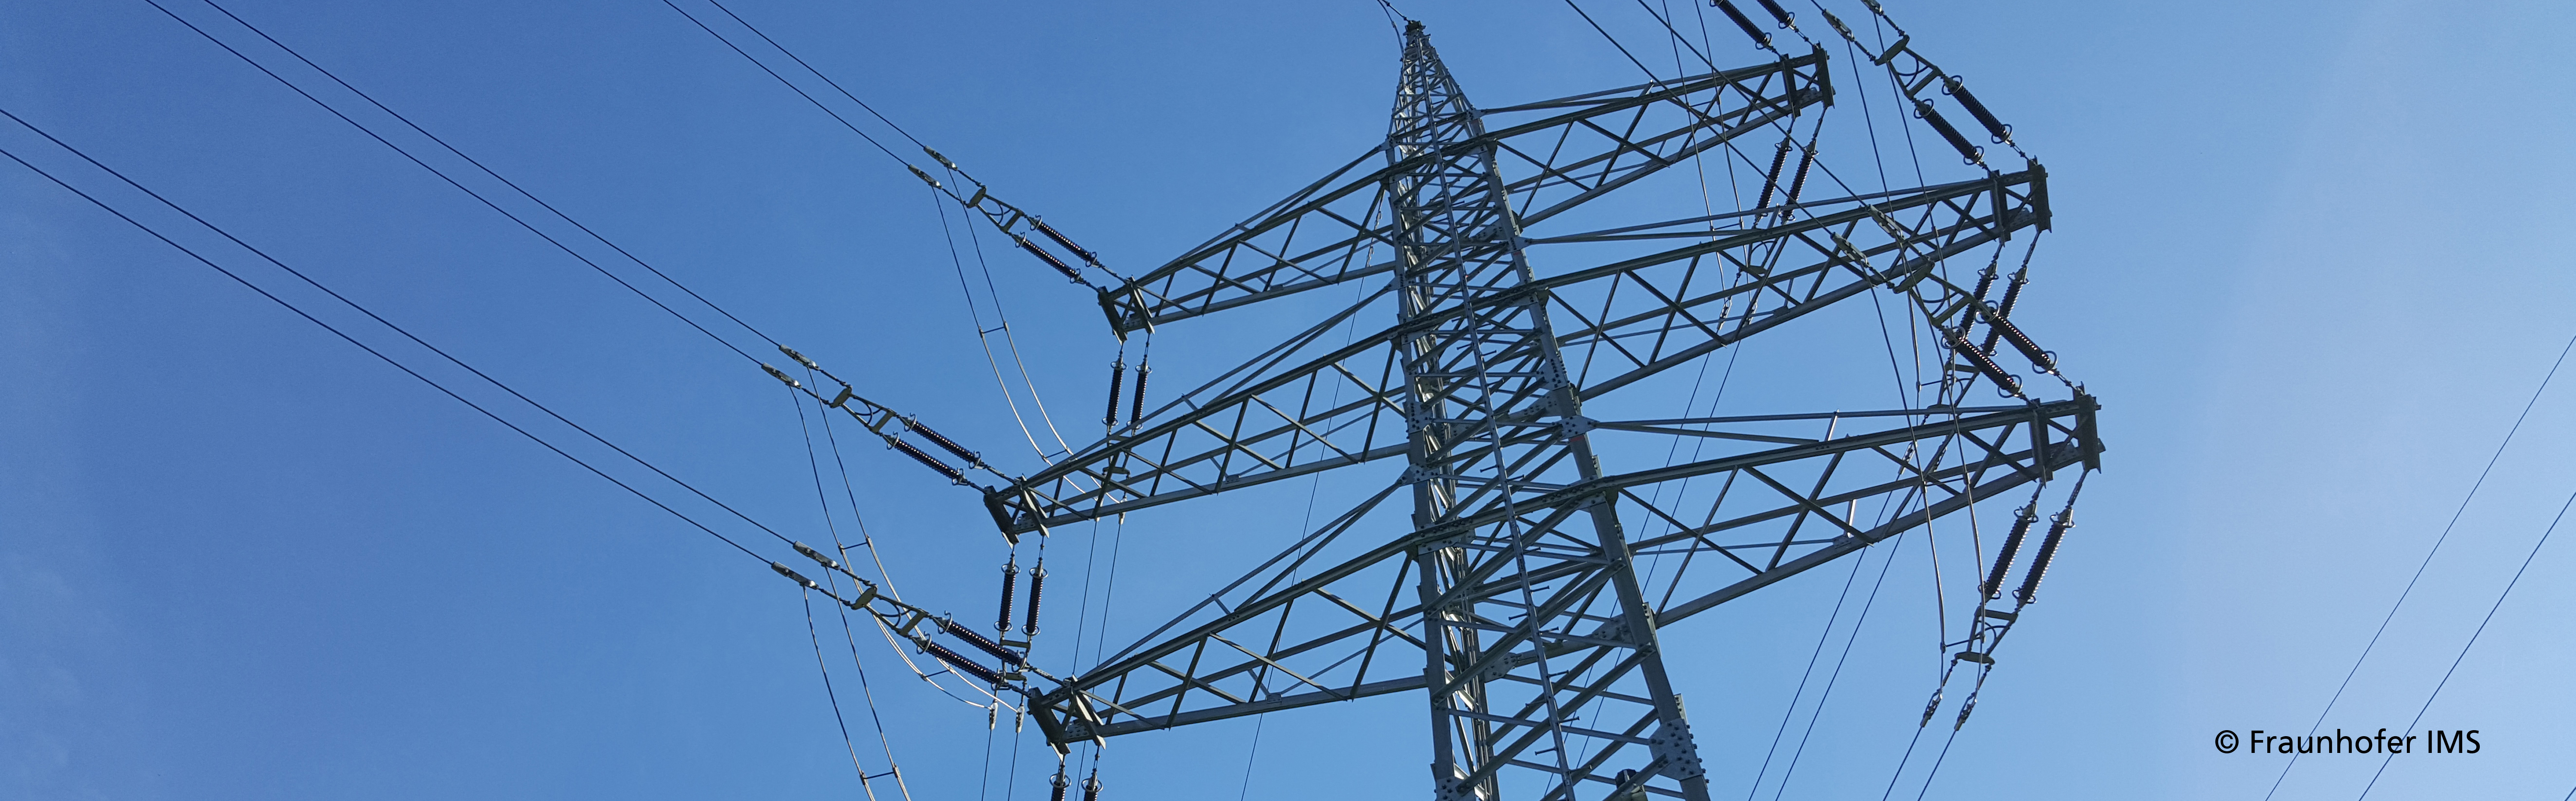 Bild von einem Strommasten vor blauem Himmel